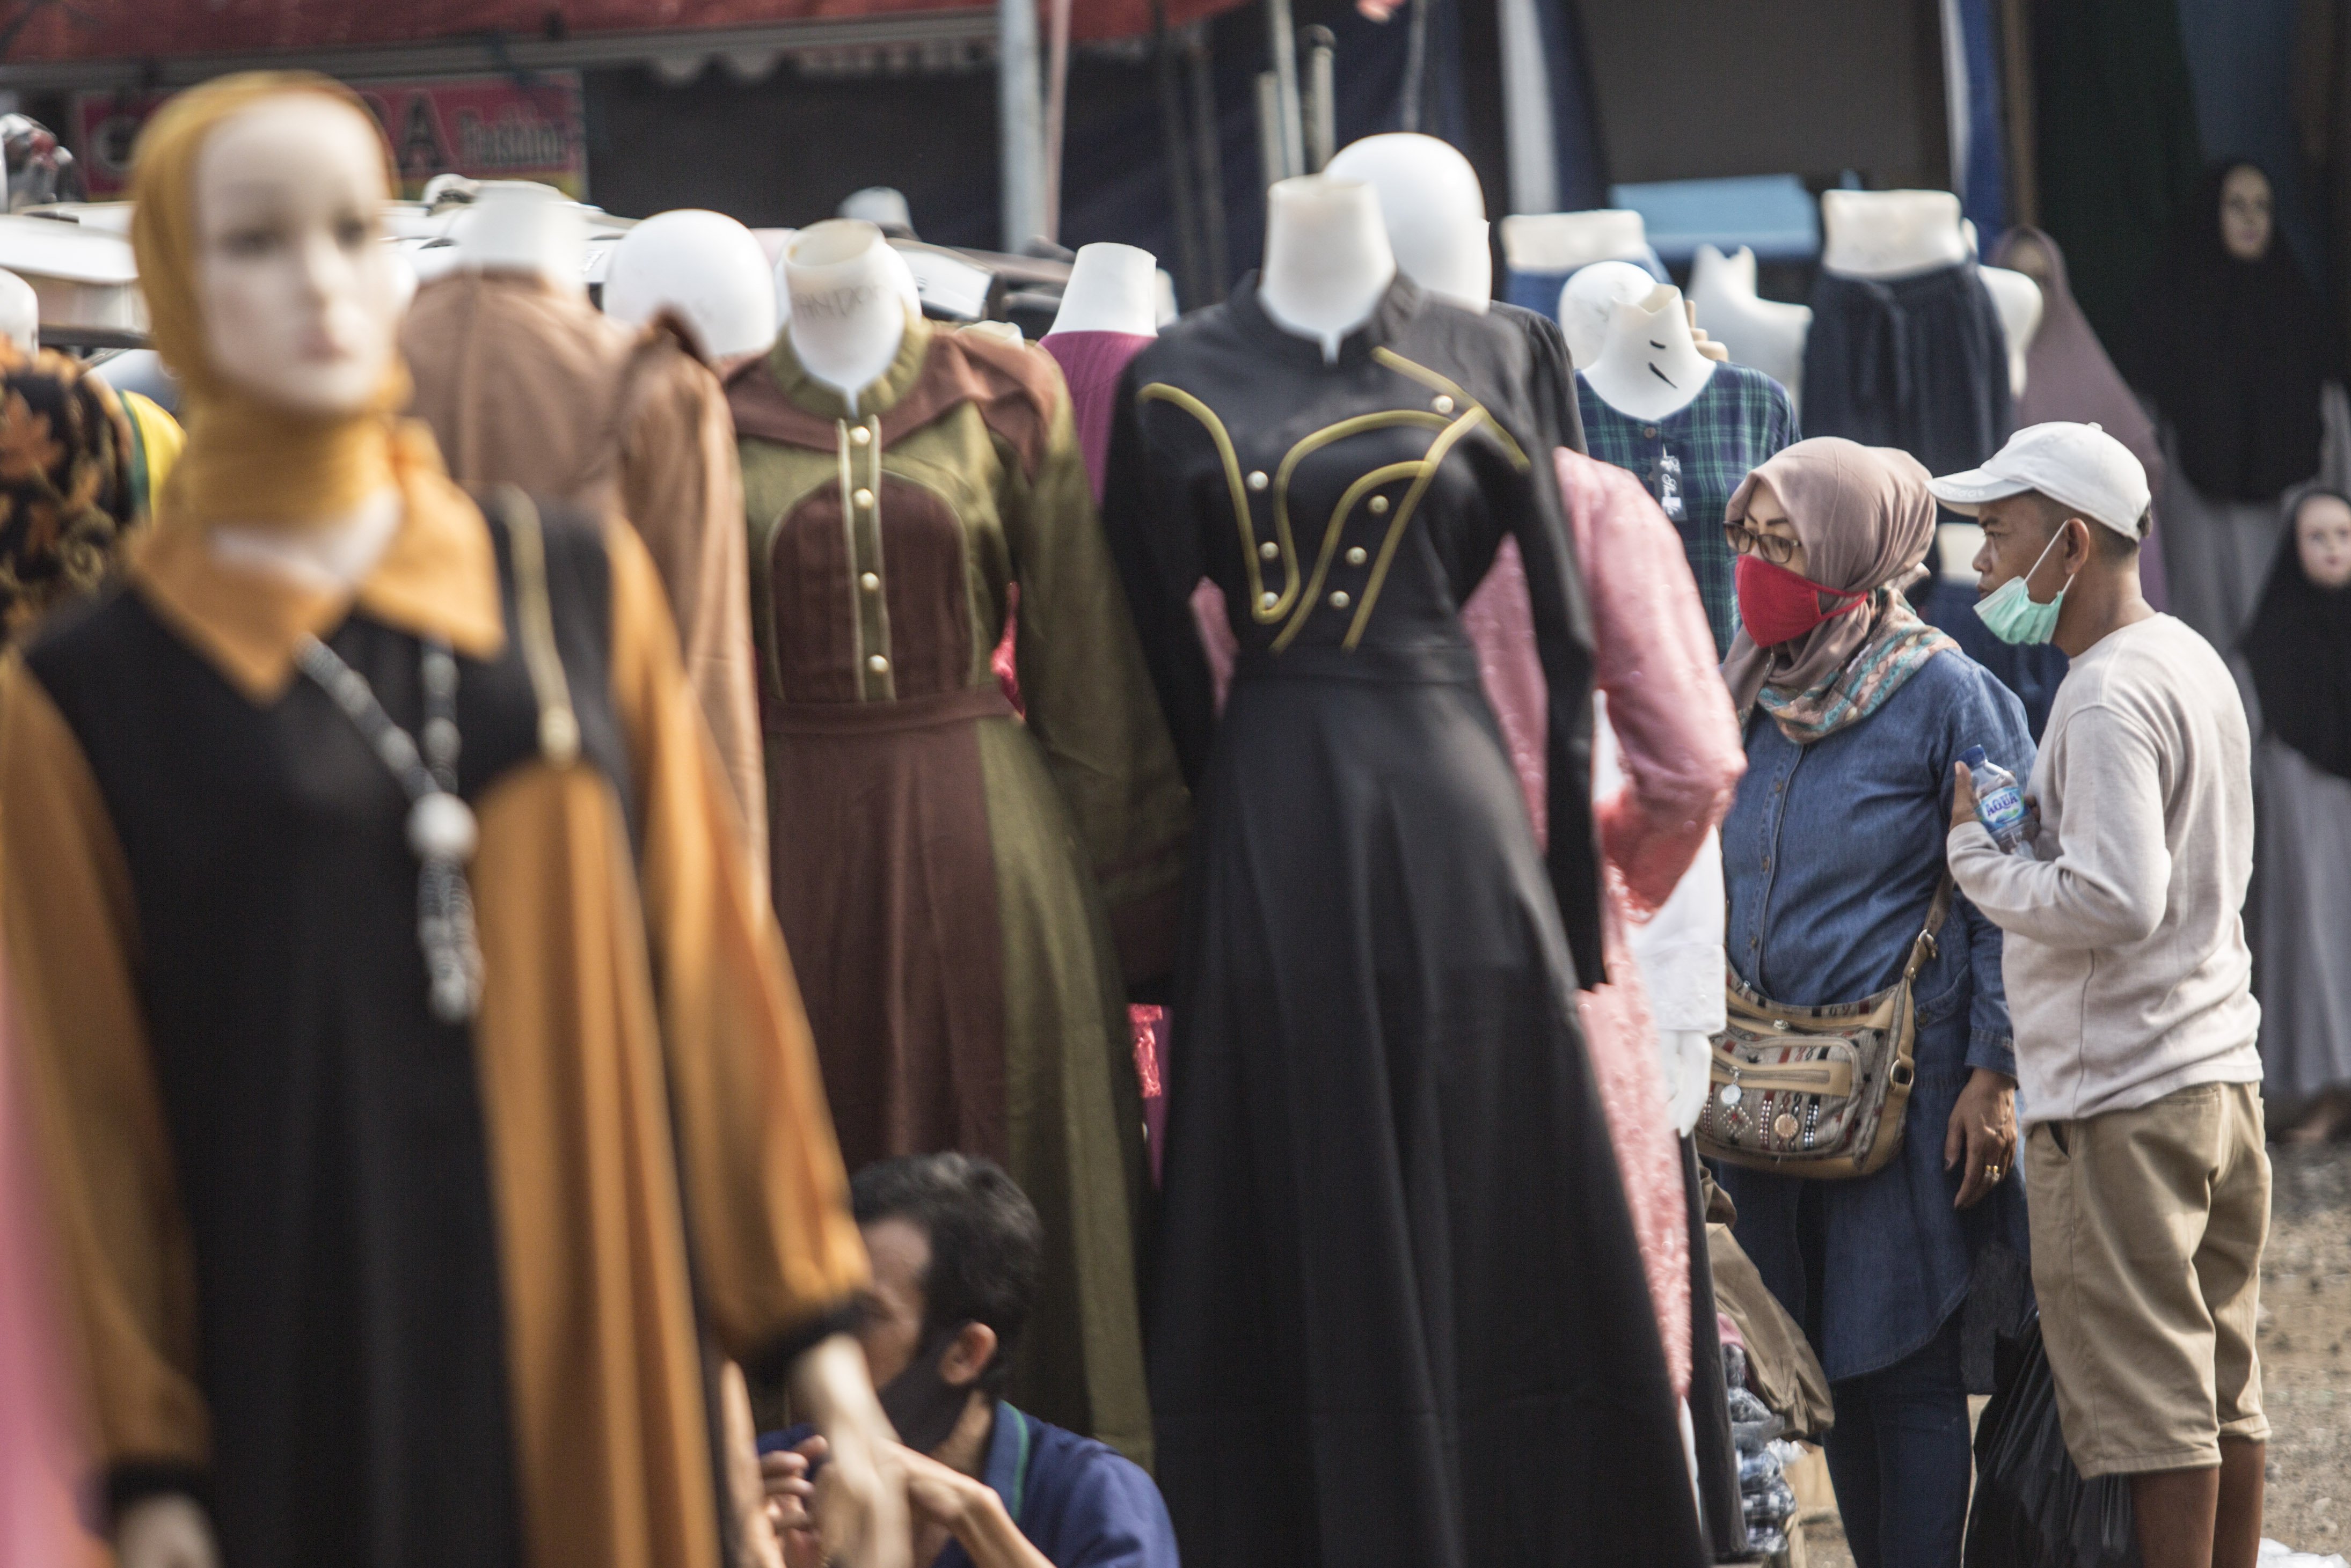 Pembeli memilih pakaian di Pasar Tasik, Cideng, Jakarta, Kamis (11/6/2020). Sempat ditutup sejak April lalu, kini Pasar Tasik kembali buka pada masa transisi Pembasatan Sosial Bersekala Besar (PSBB) dengan menerapkan protokol kesehatan serta pembatasan jumlah pengunjung.